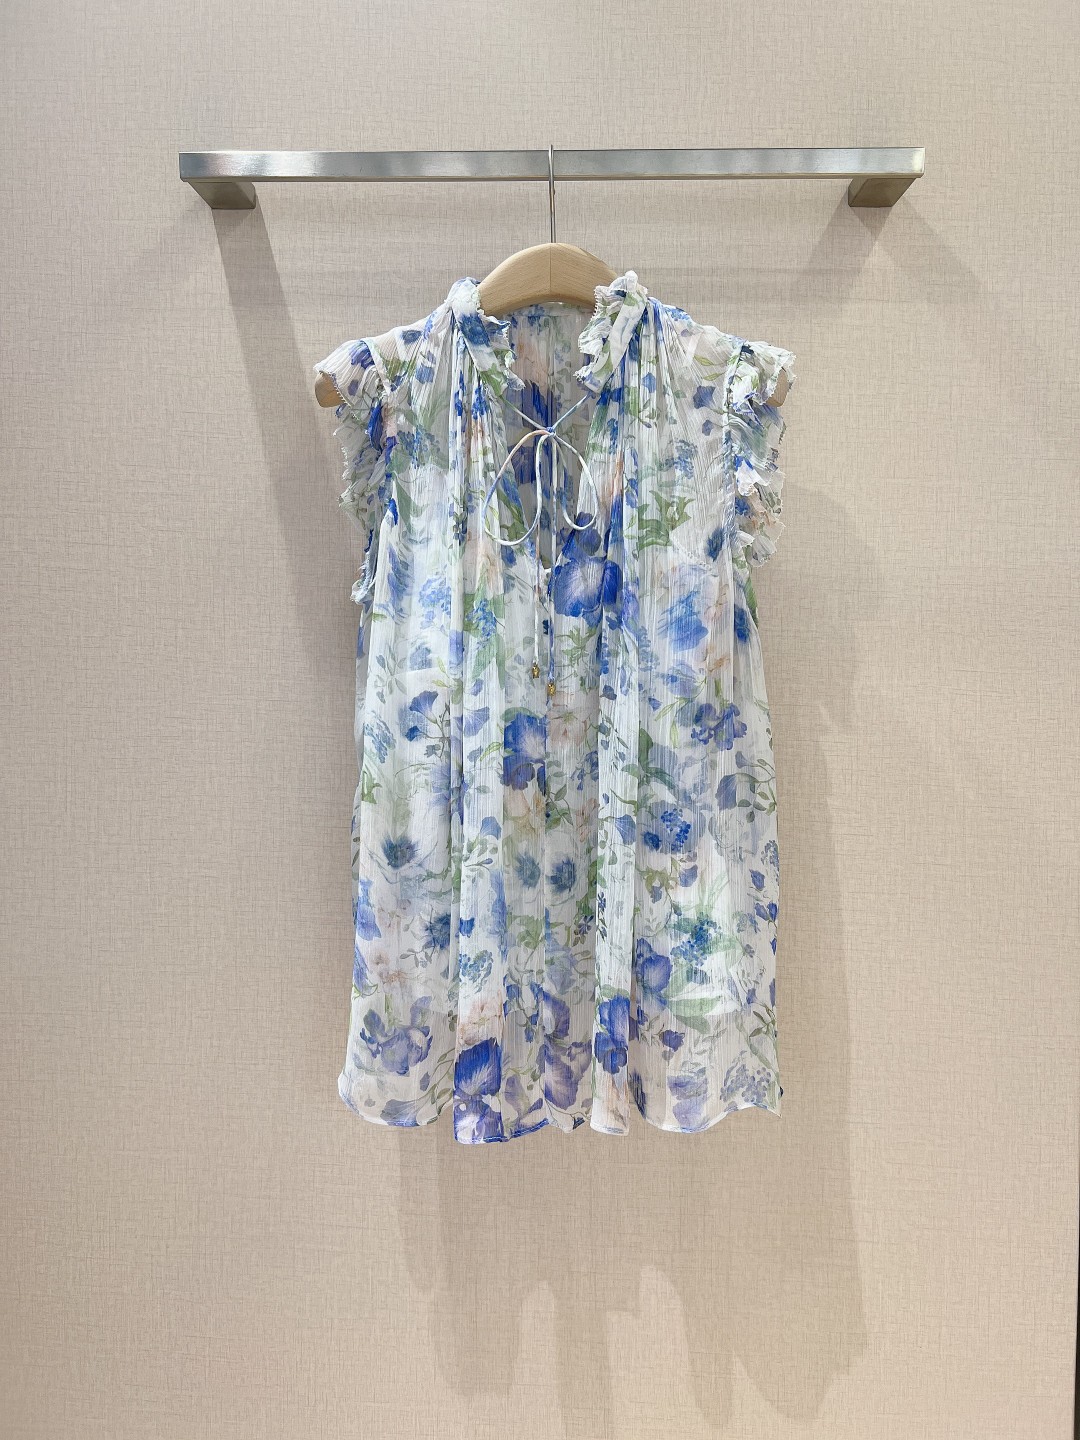 Z*i*m*春夏新款new这款无袖上衣饰有柔和的花卉印花象牙白底色蓝色花卉采用迷人的深V领设计沿领口与肩